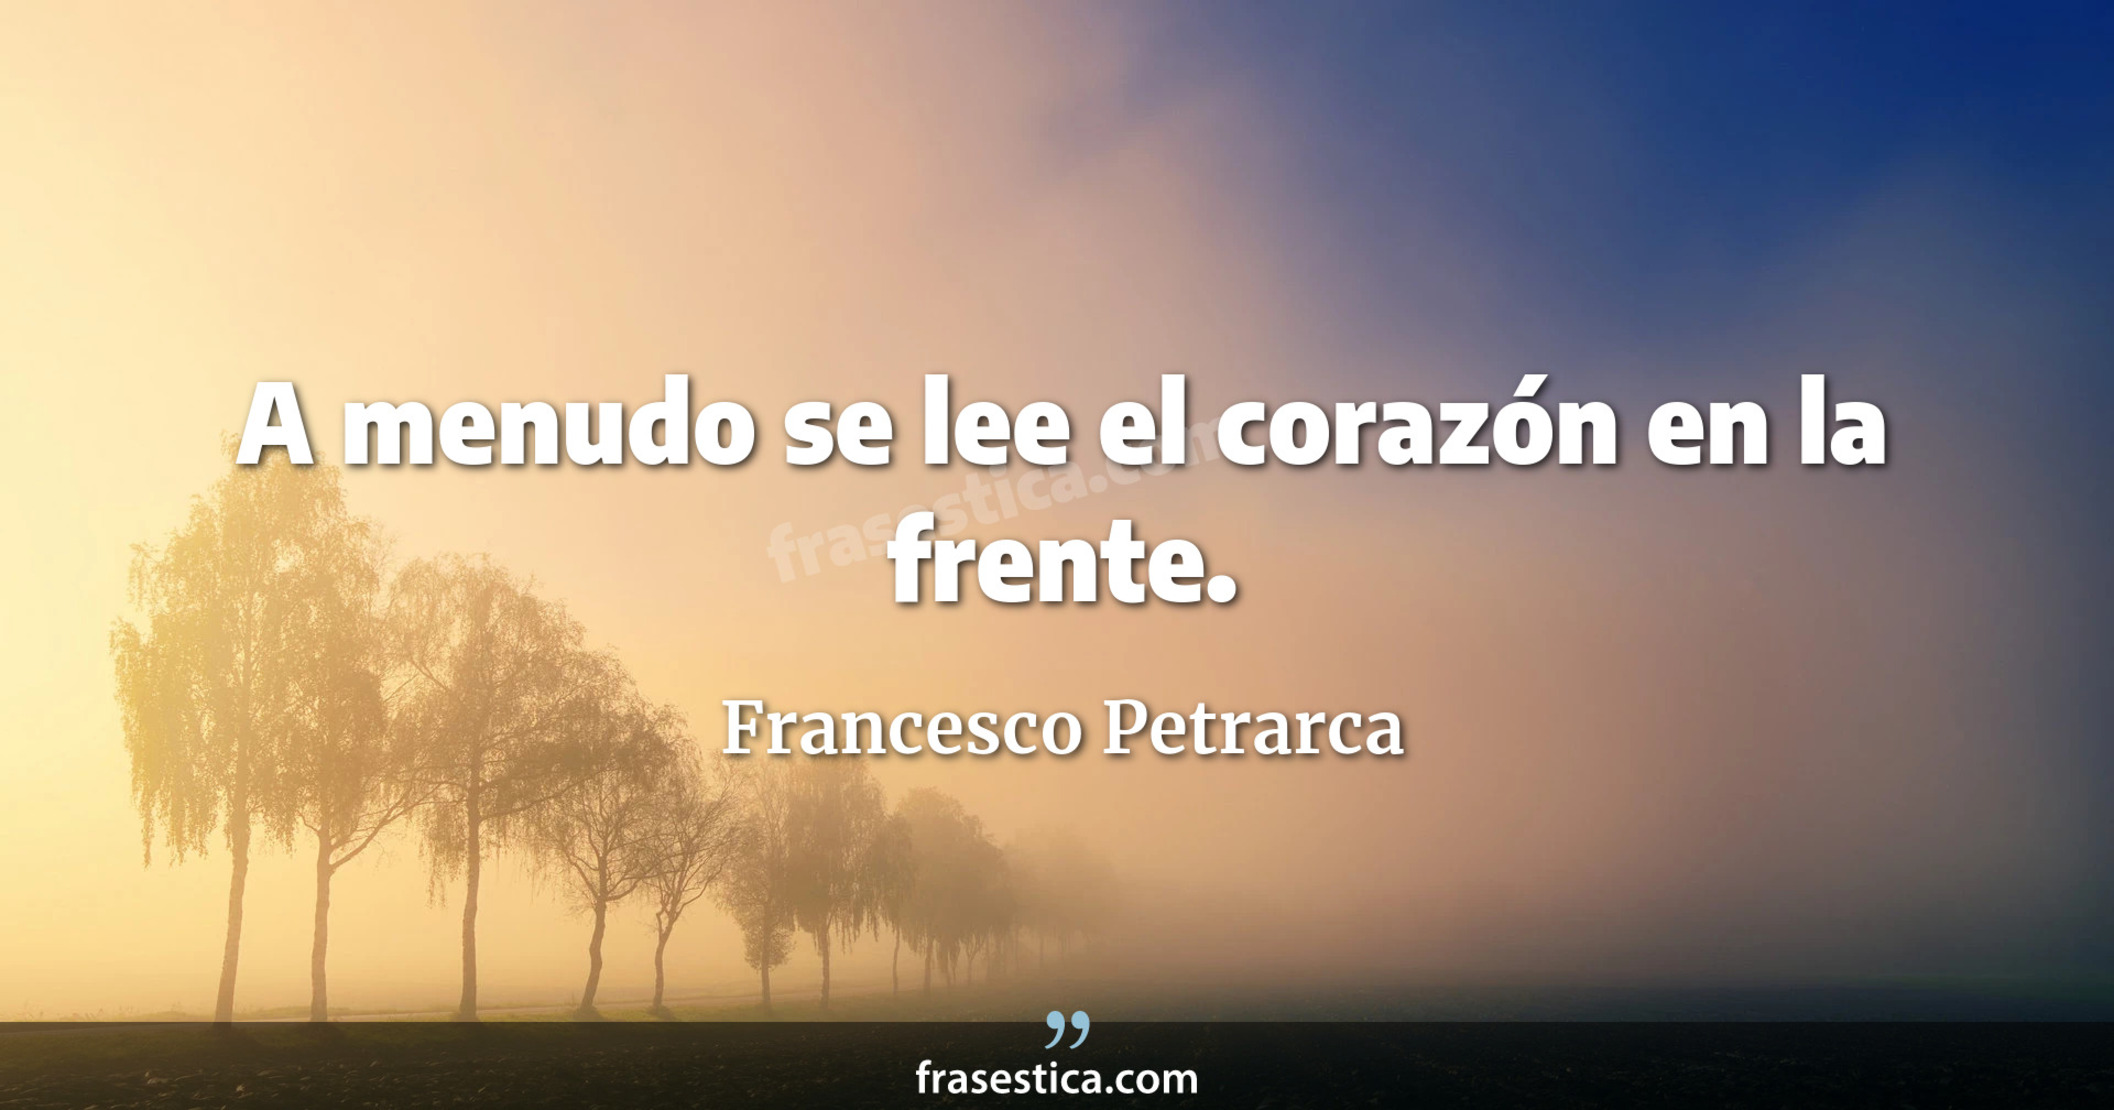 A menudo se lee el corazón en la frente. - Francesco Petrarca